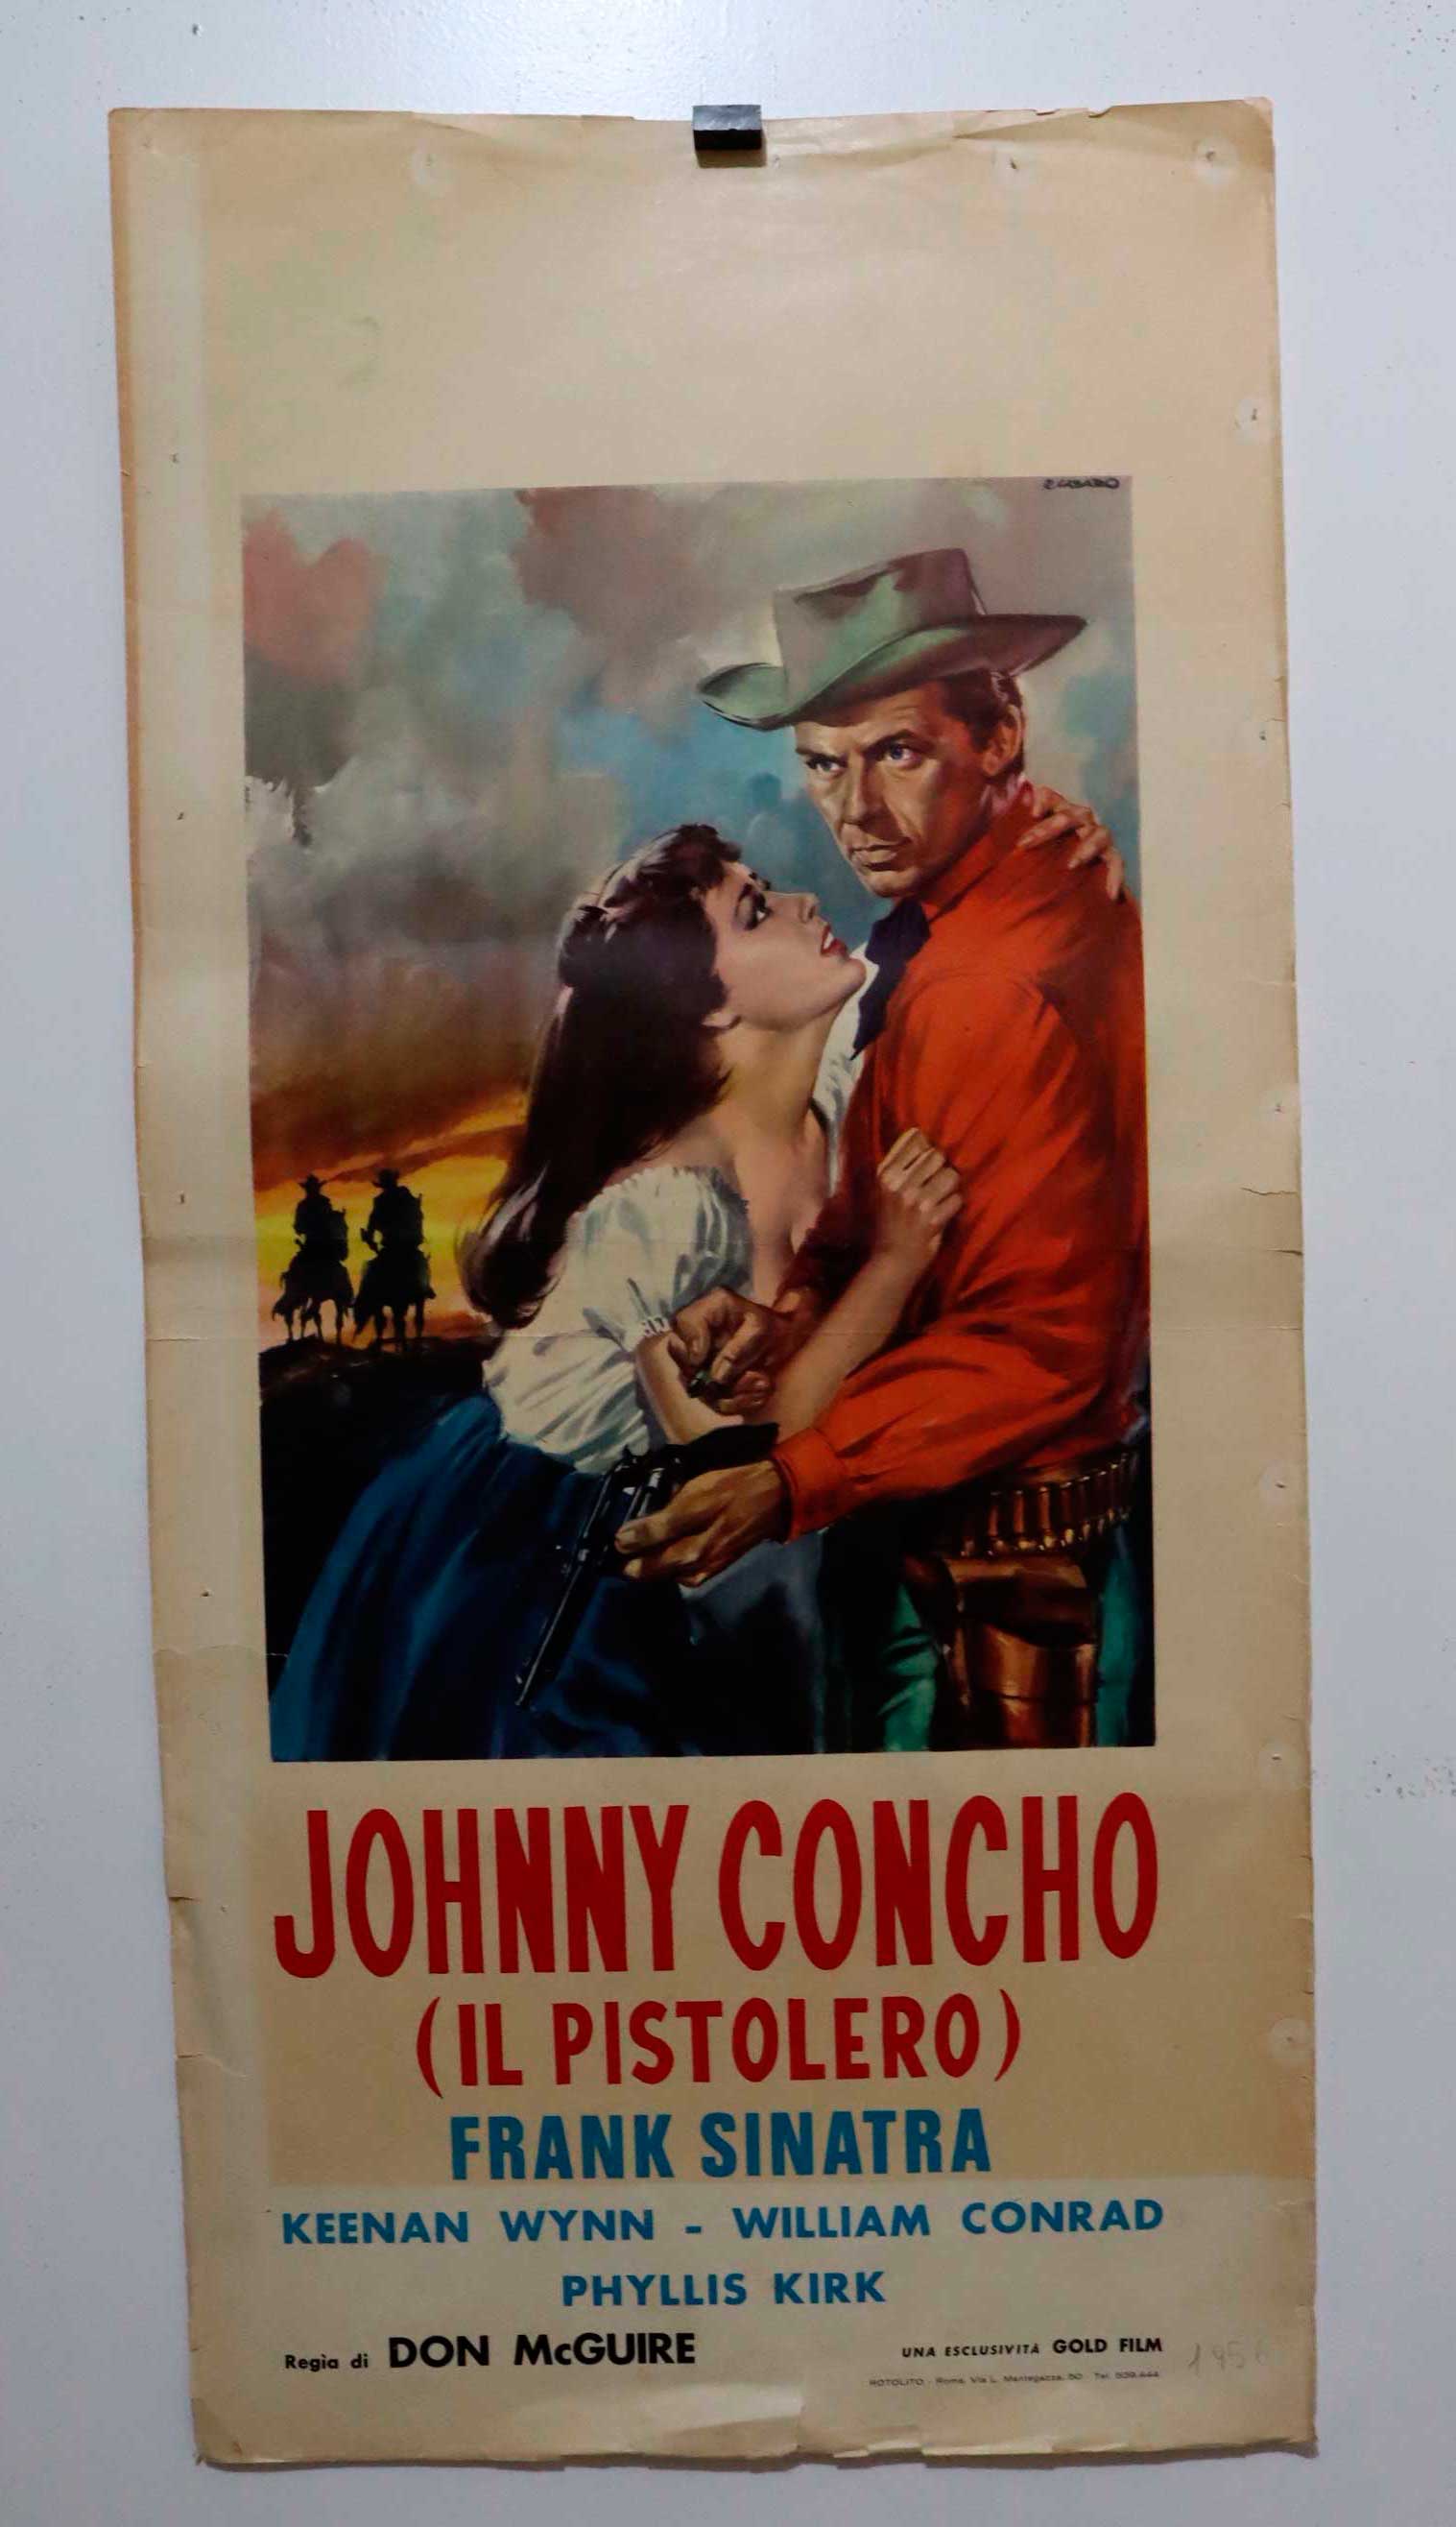 JOHNNY CONCHO (IL PISTOLERO)